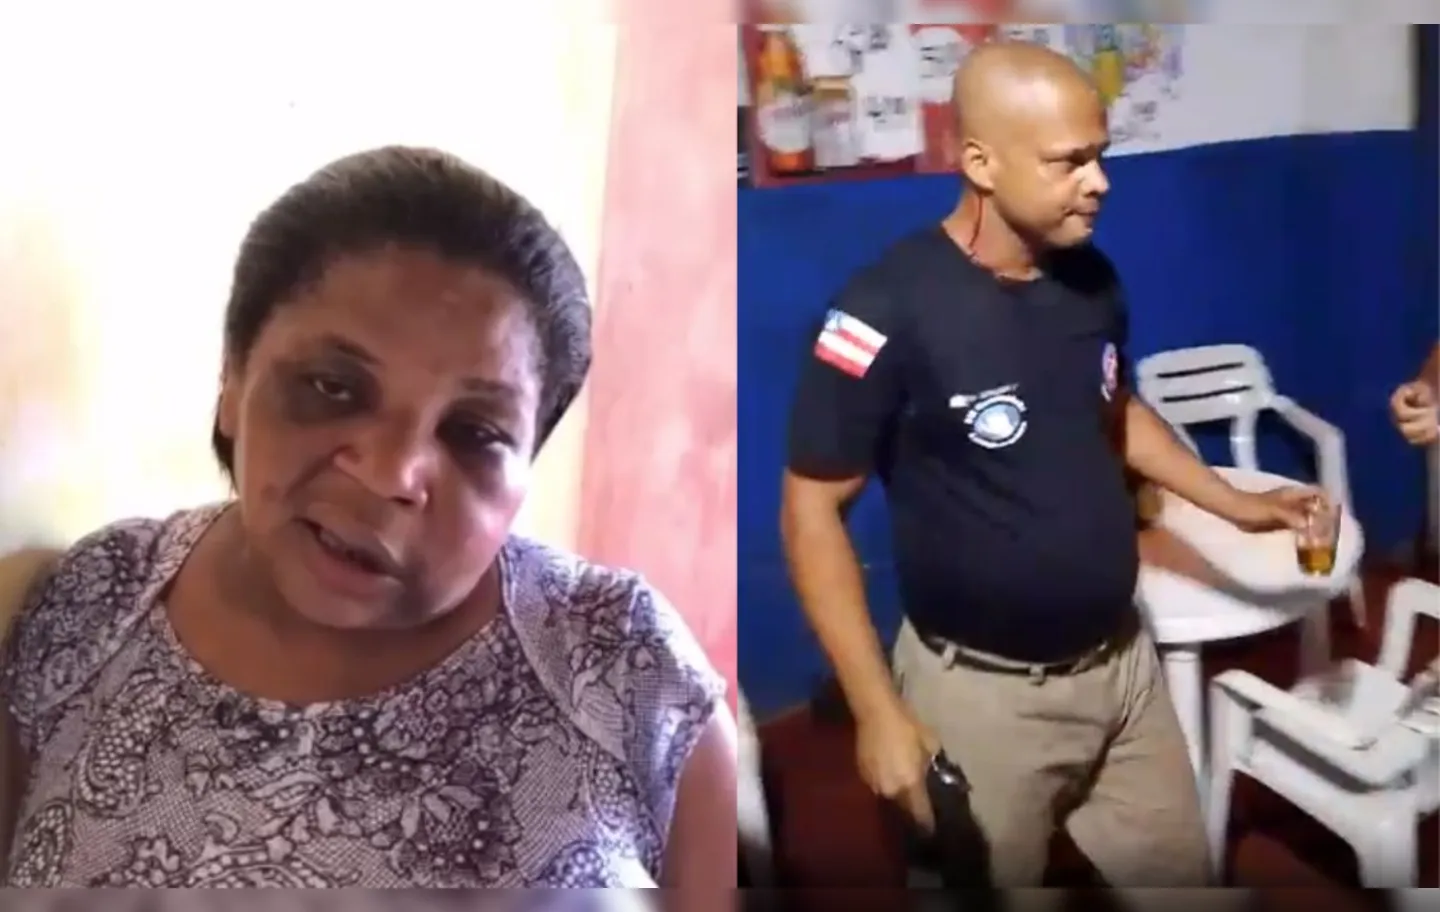 Em fevereiro deste ano, um vídeo em que mostra o sargento agredindo uma mulher em um bar no povoado de Travessão, em Camamu